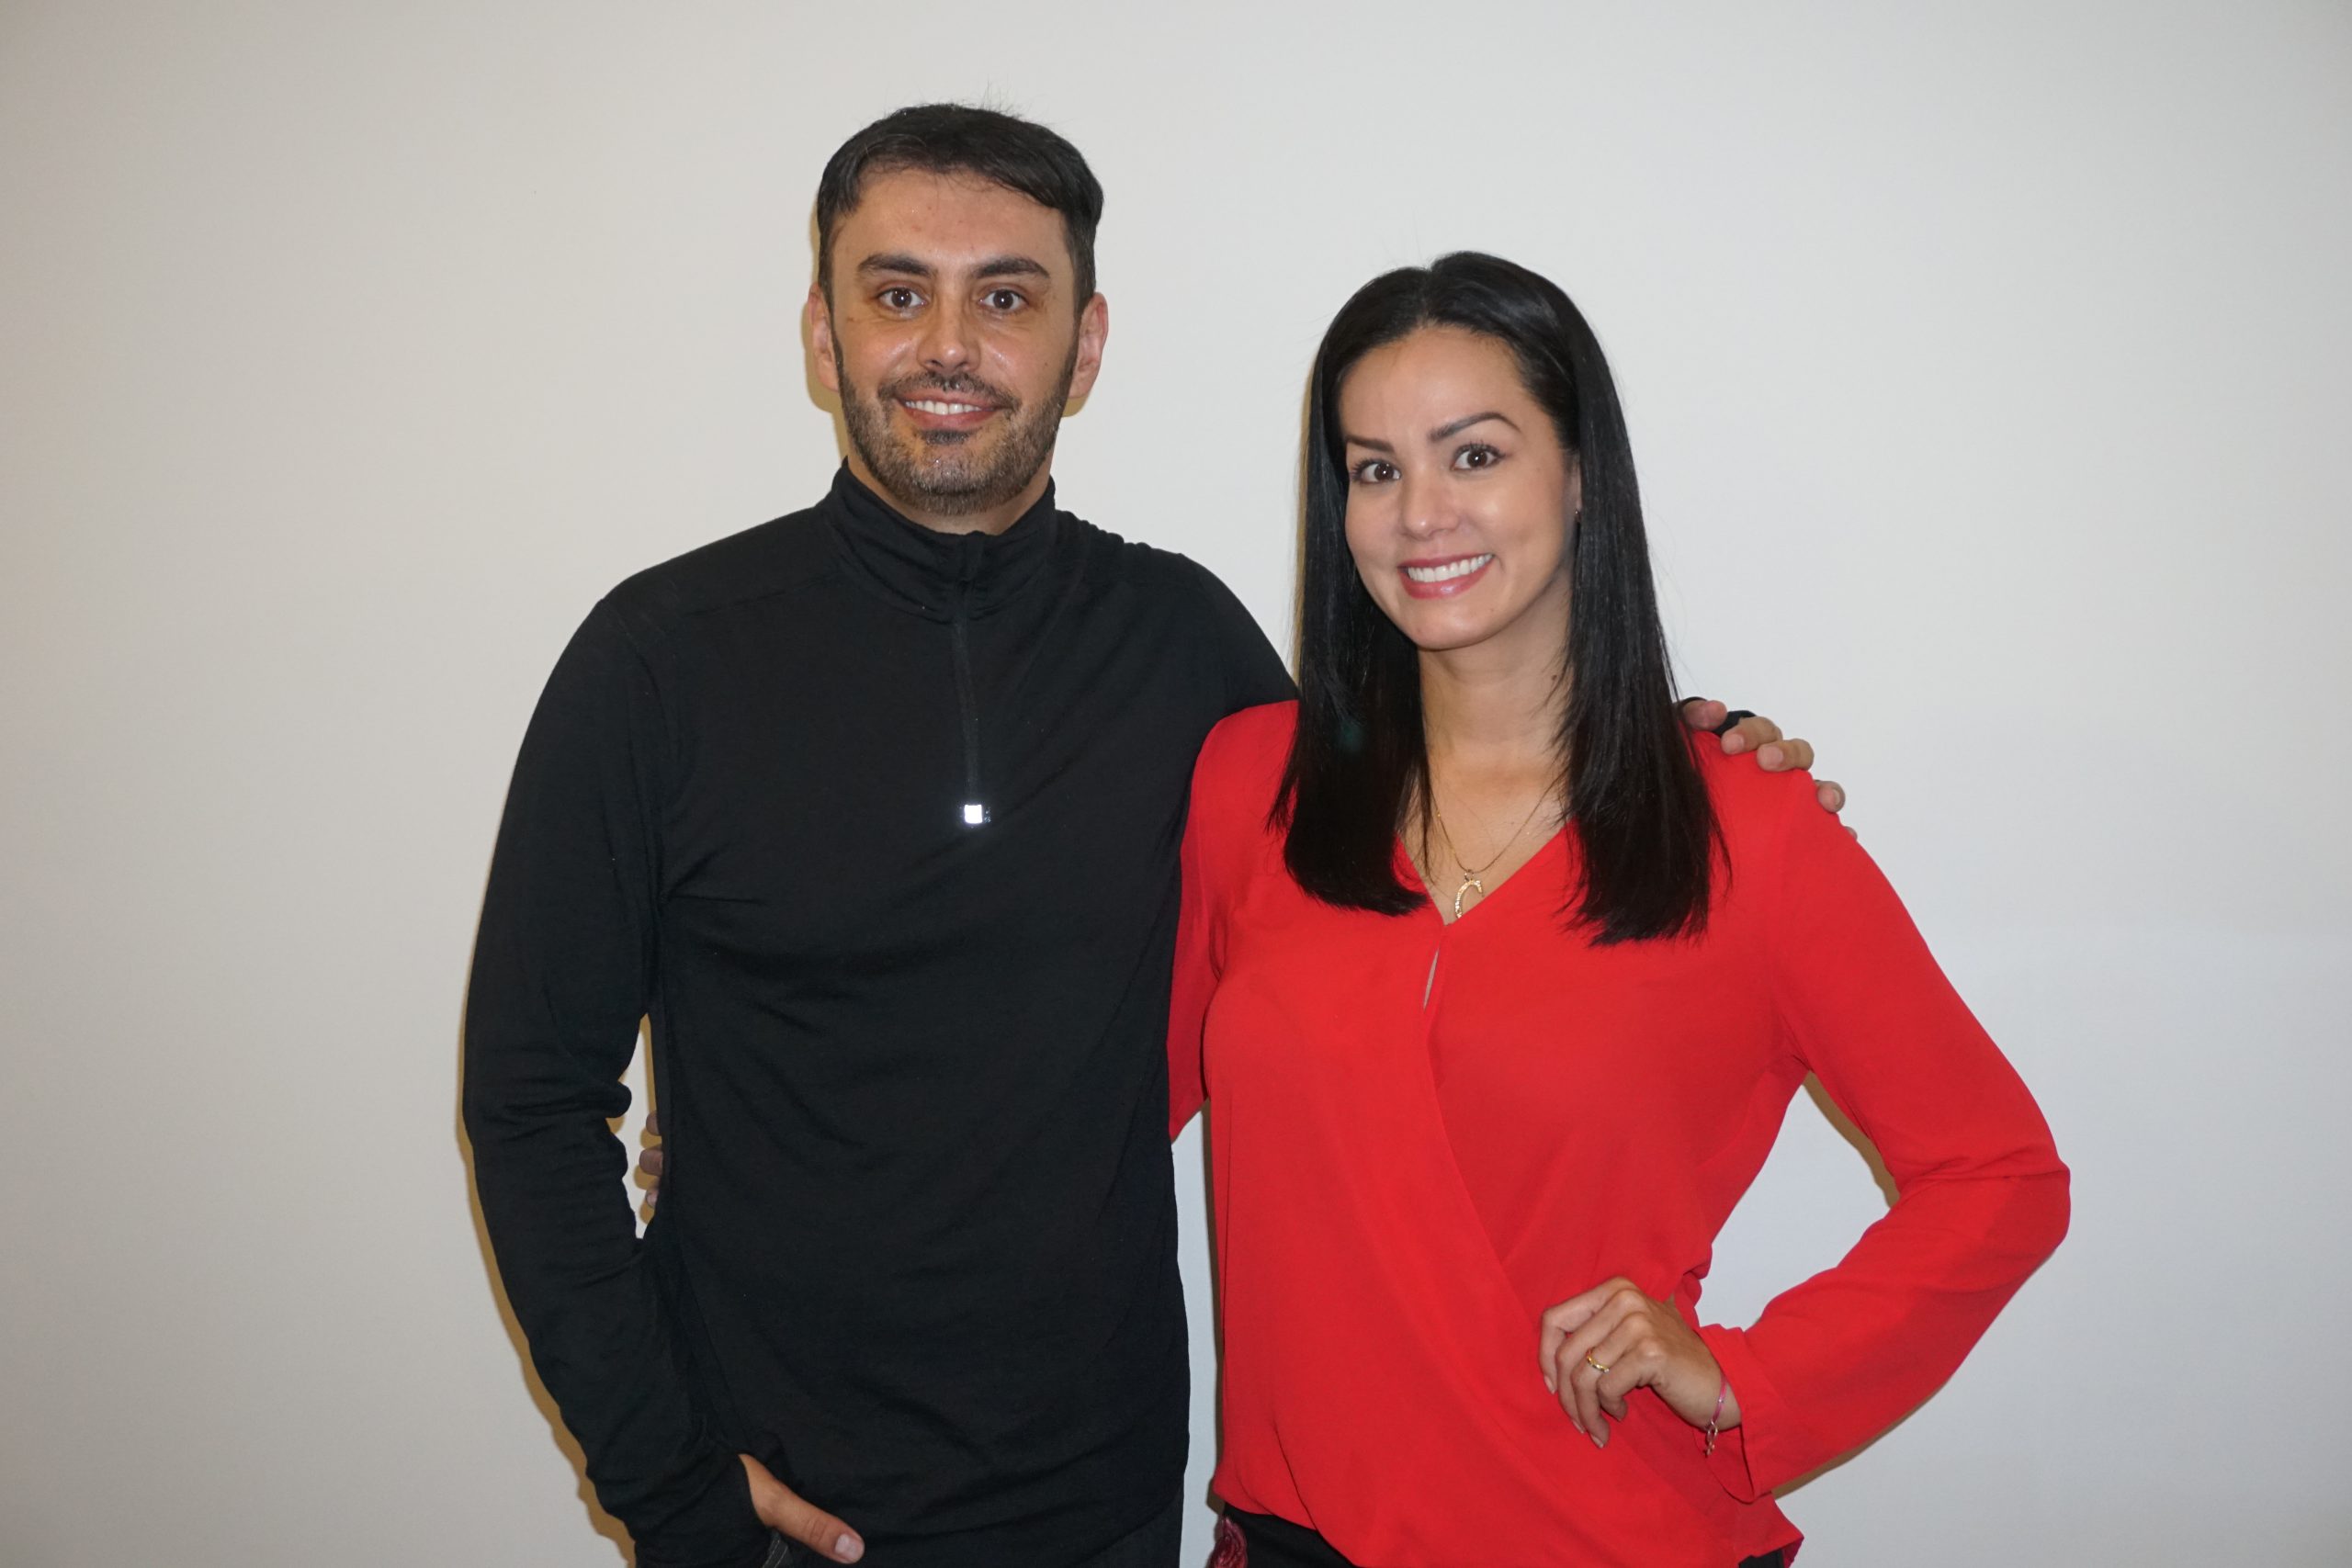 La foto. Adrián Trigo junto a Catherine Villarroel, en una de las jornadas de entrevistas que realizó el autor y entrenador.